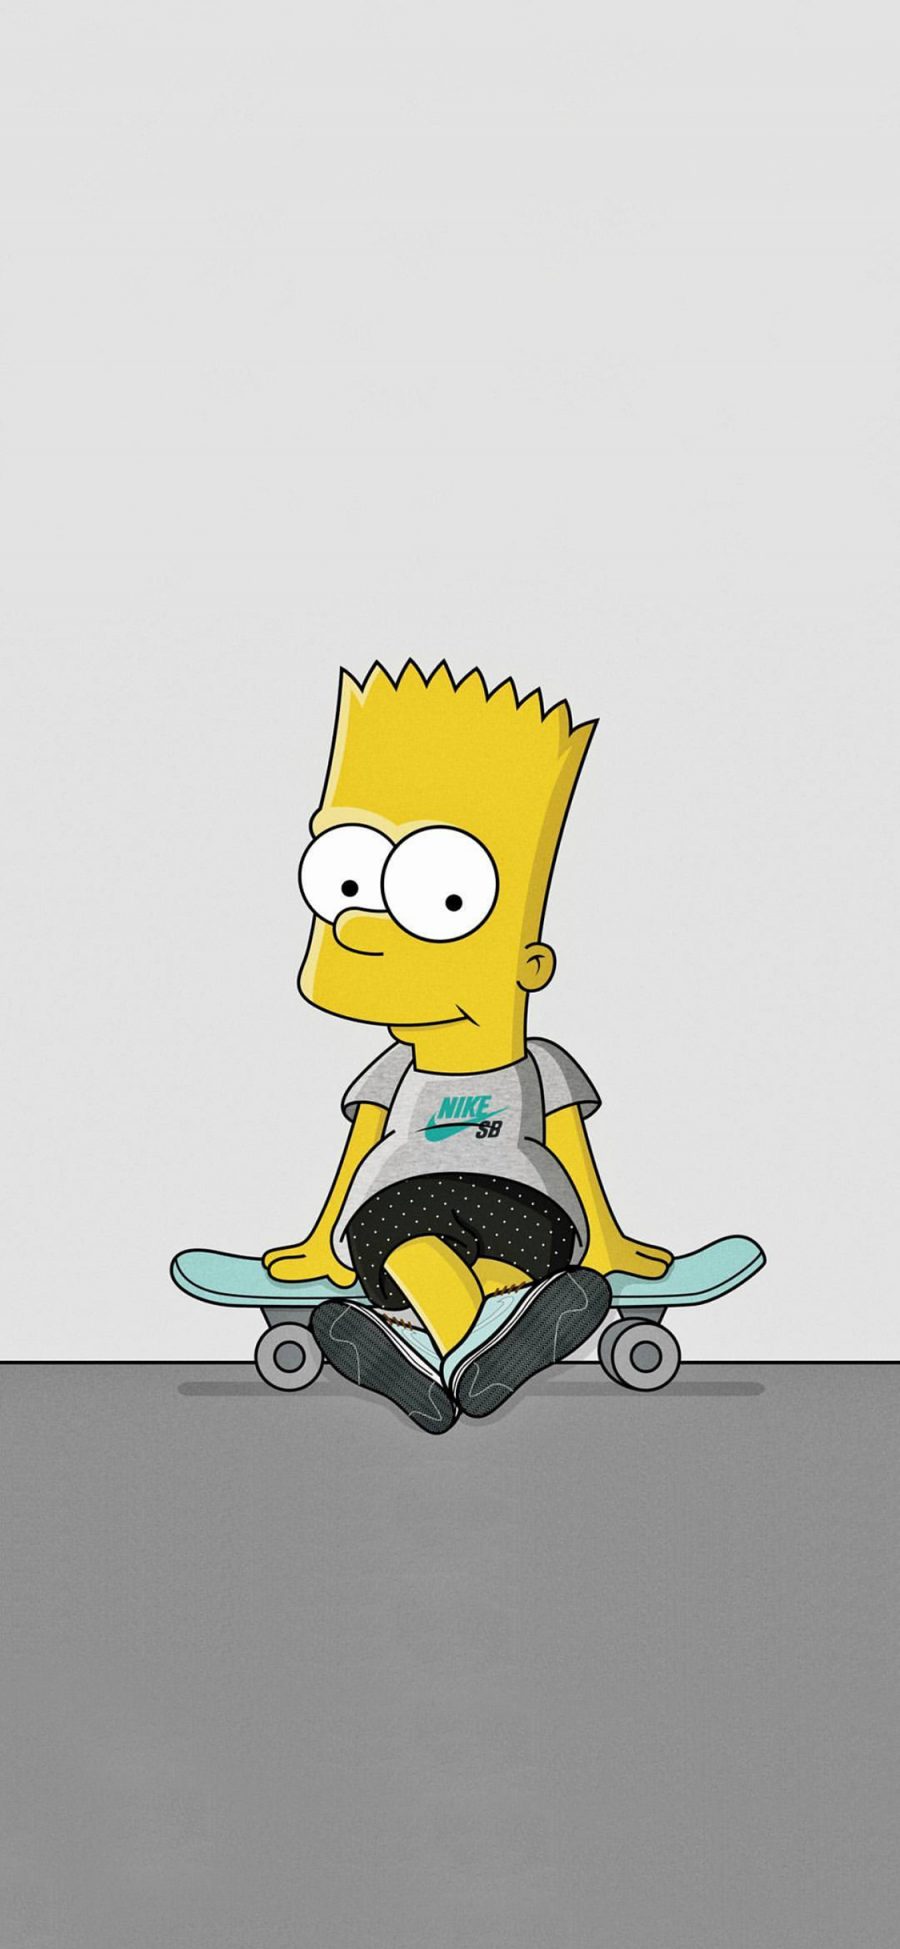 [2436×1125]辛普森一家 欧美 动画 男孩 Bart 滑板 苹果手机动漫壁纸图片